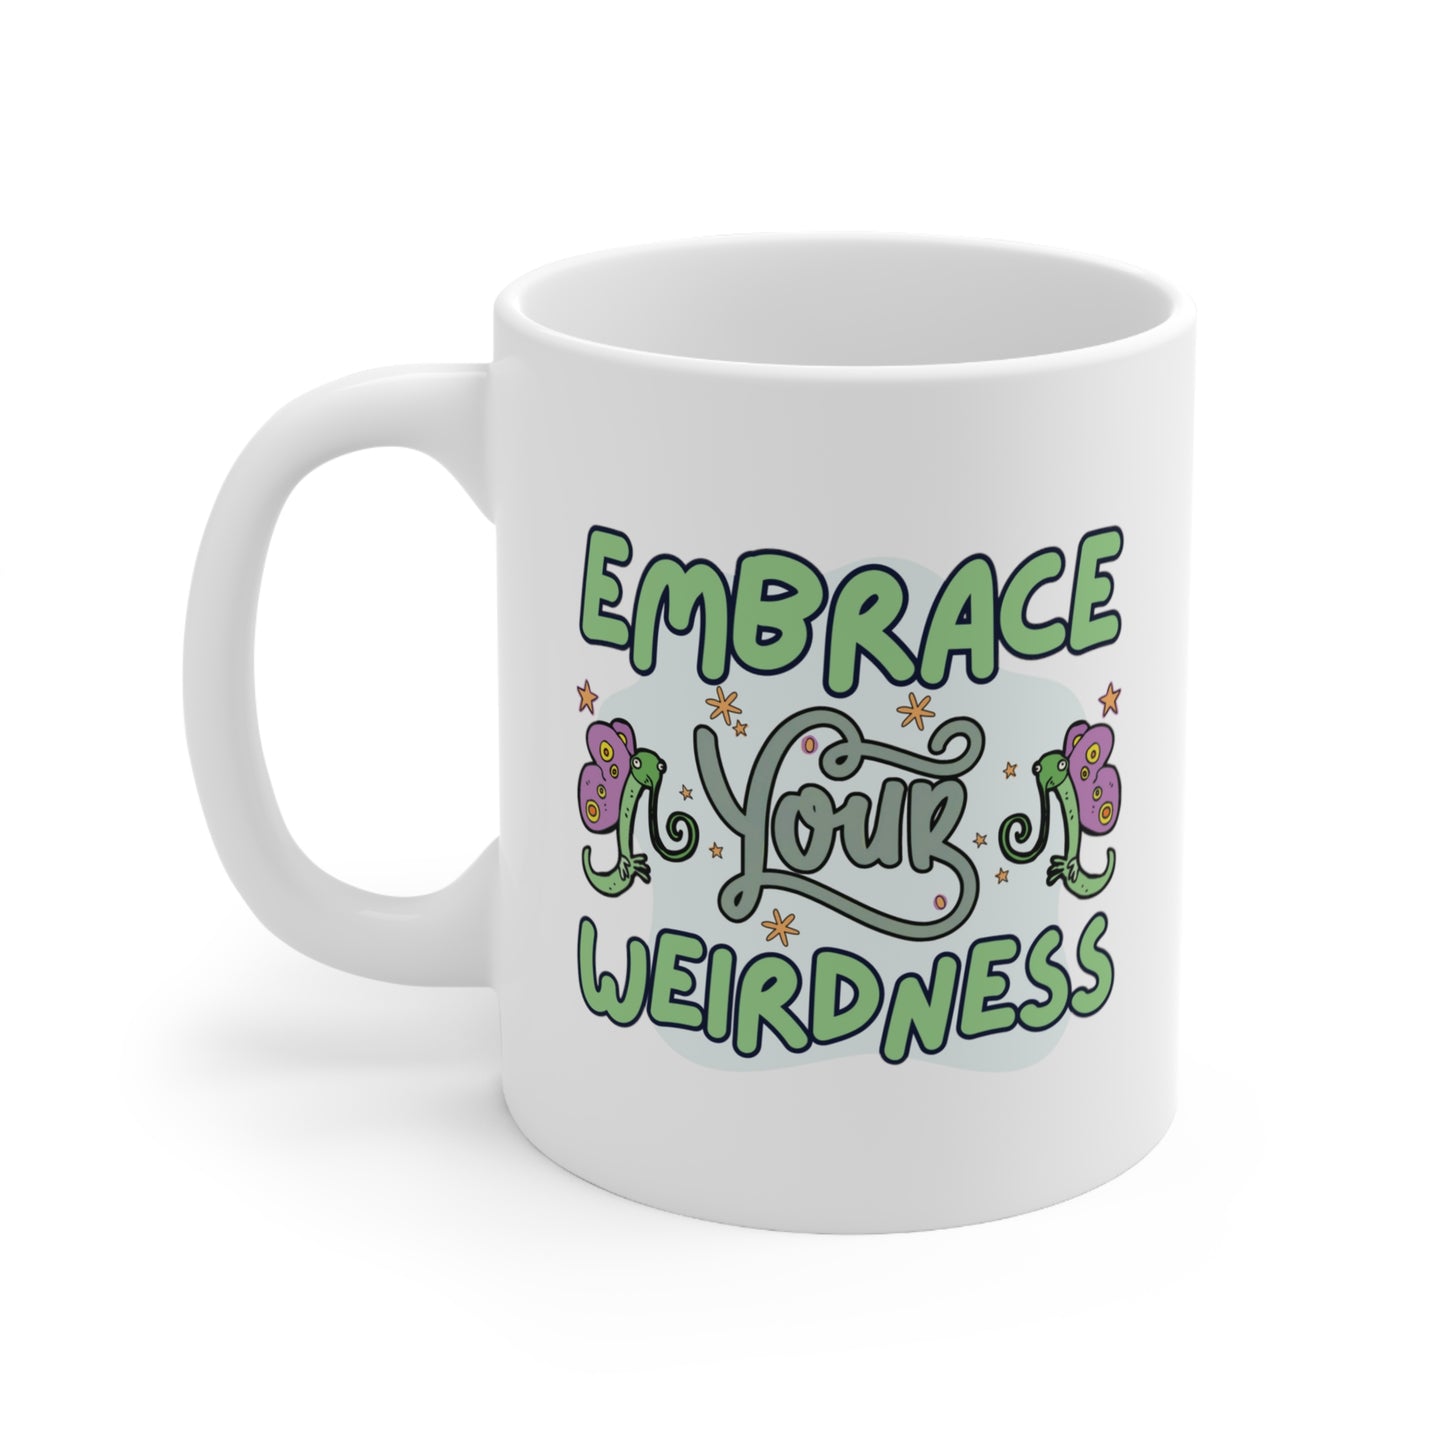 Embrace Your Weirdness - Neurodiversity Celebration Mug